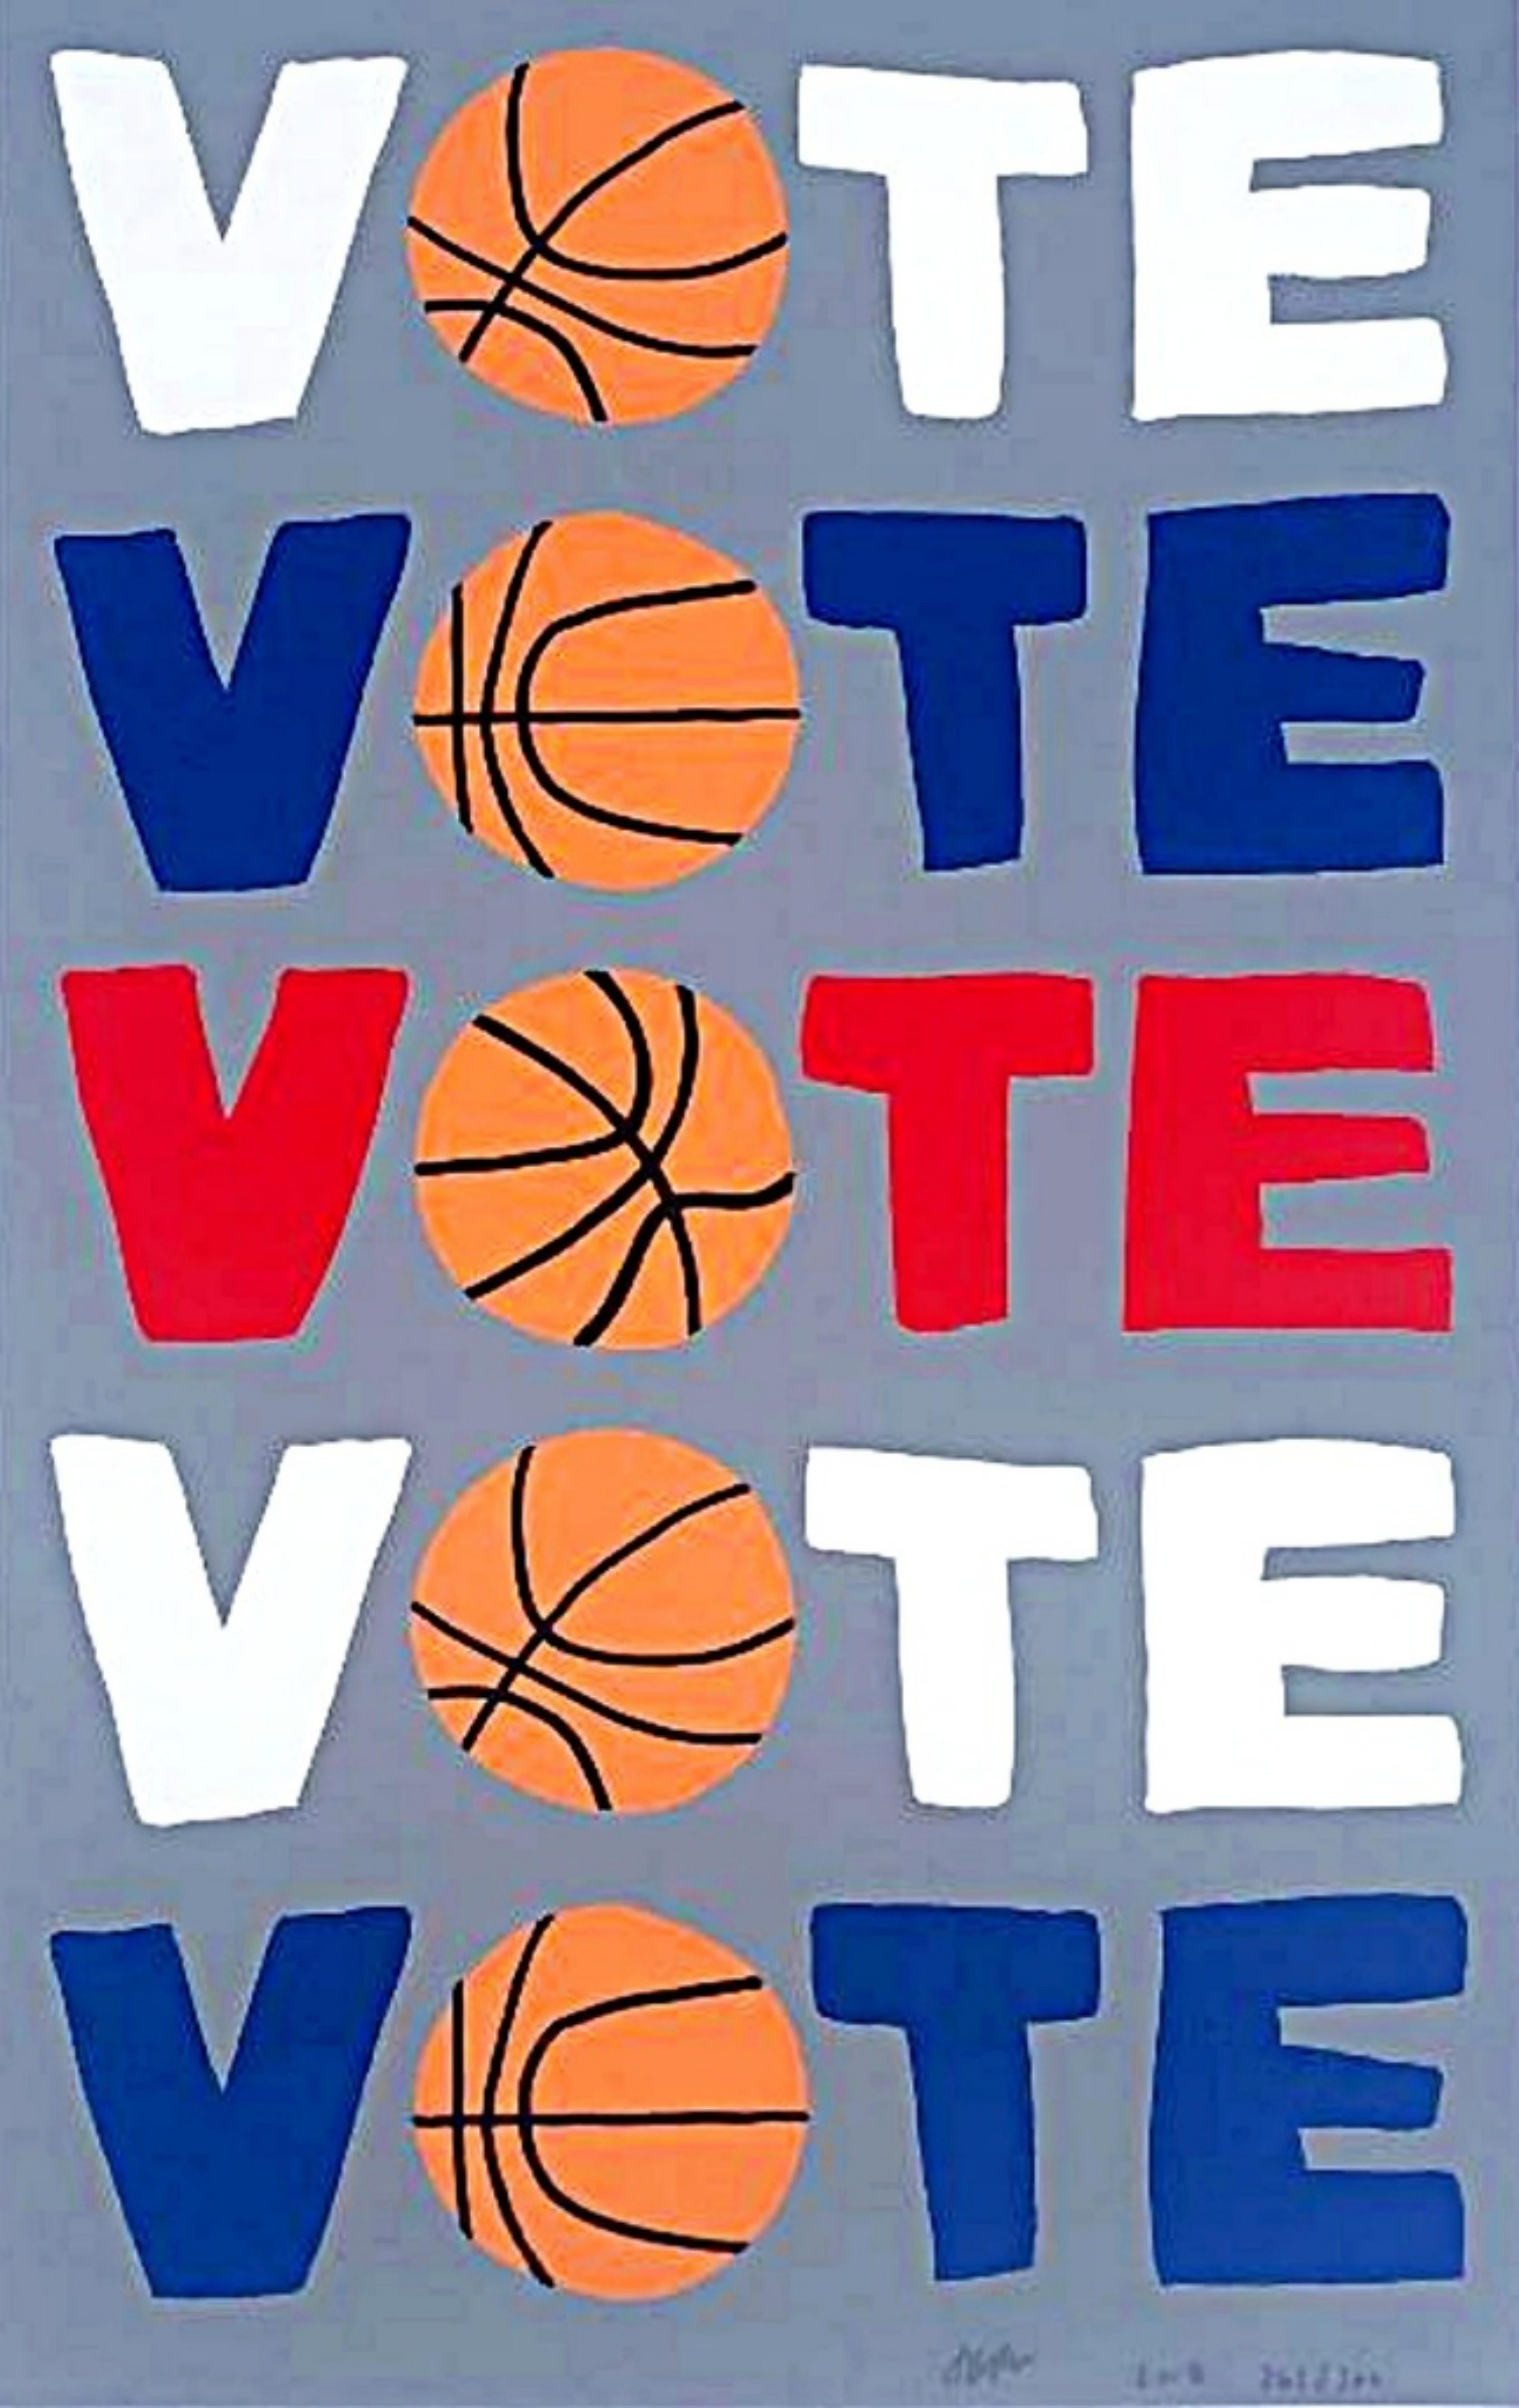 VOTE, sérigraphie politique en édition limitée avec la célèbre image de basket-ball de l'artiste